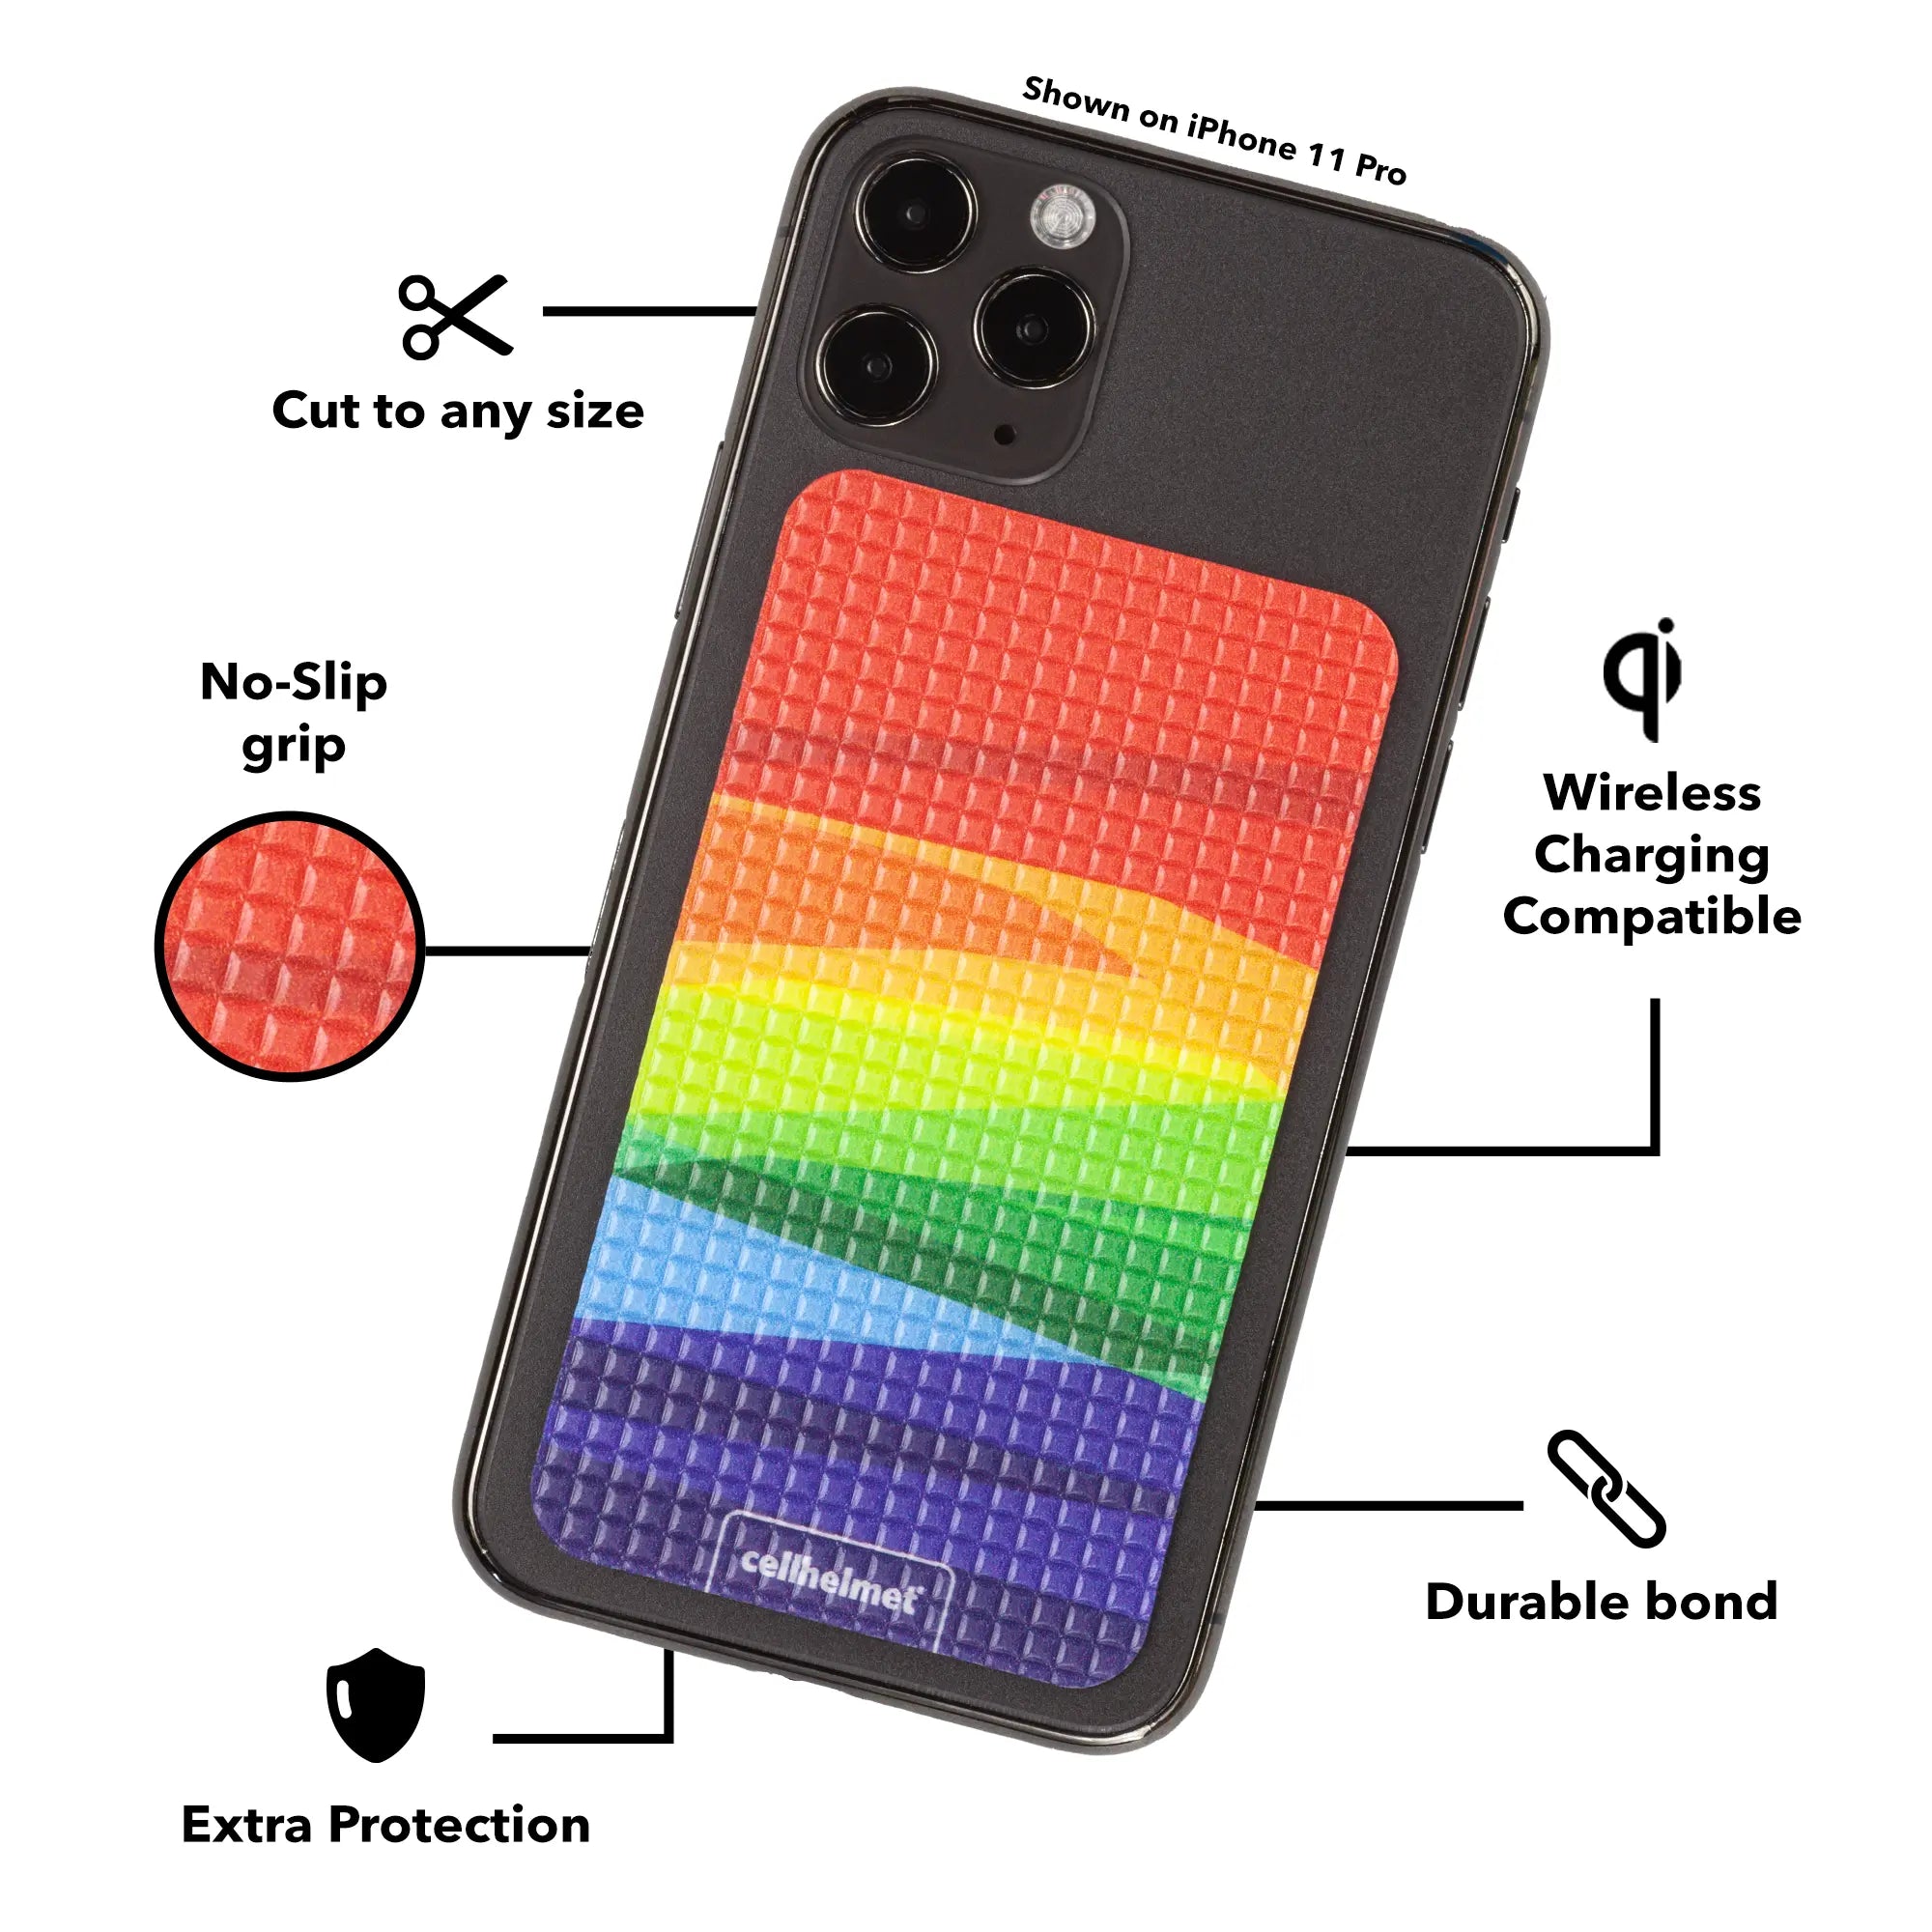 tackbacks Over the Rainbow Phone Standard -  -  - cellhelmet